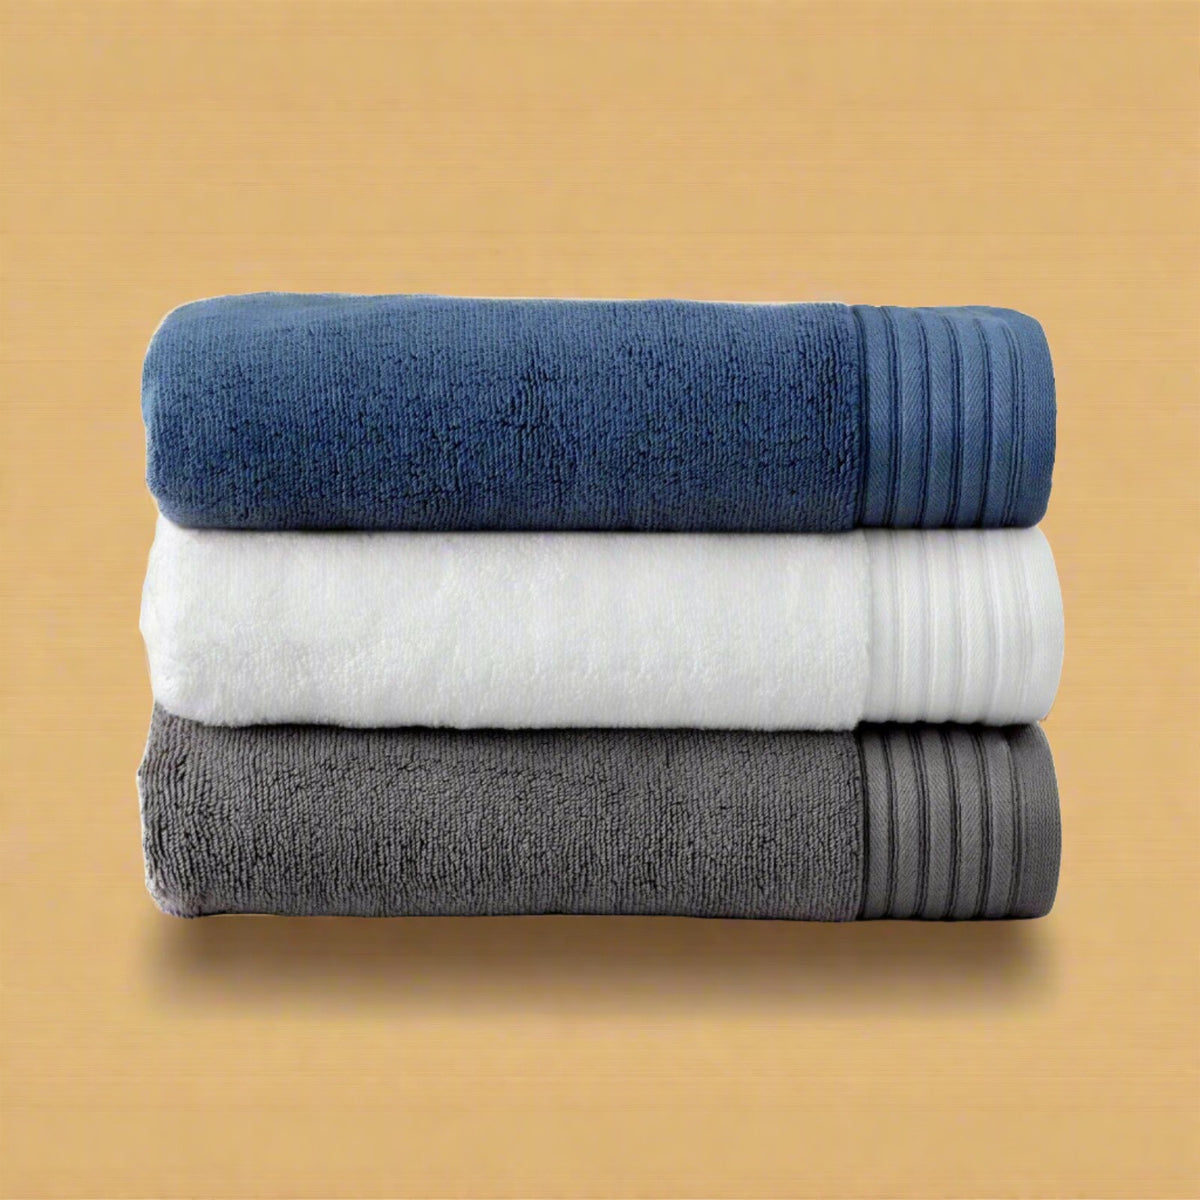 Egyptian Cotton Bath Towel - beddingbag.com